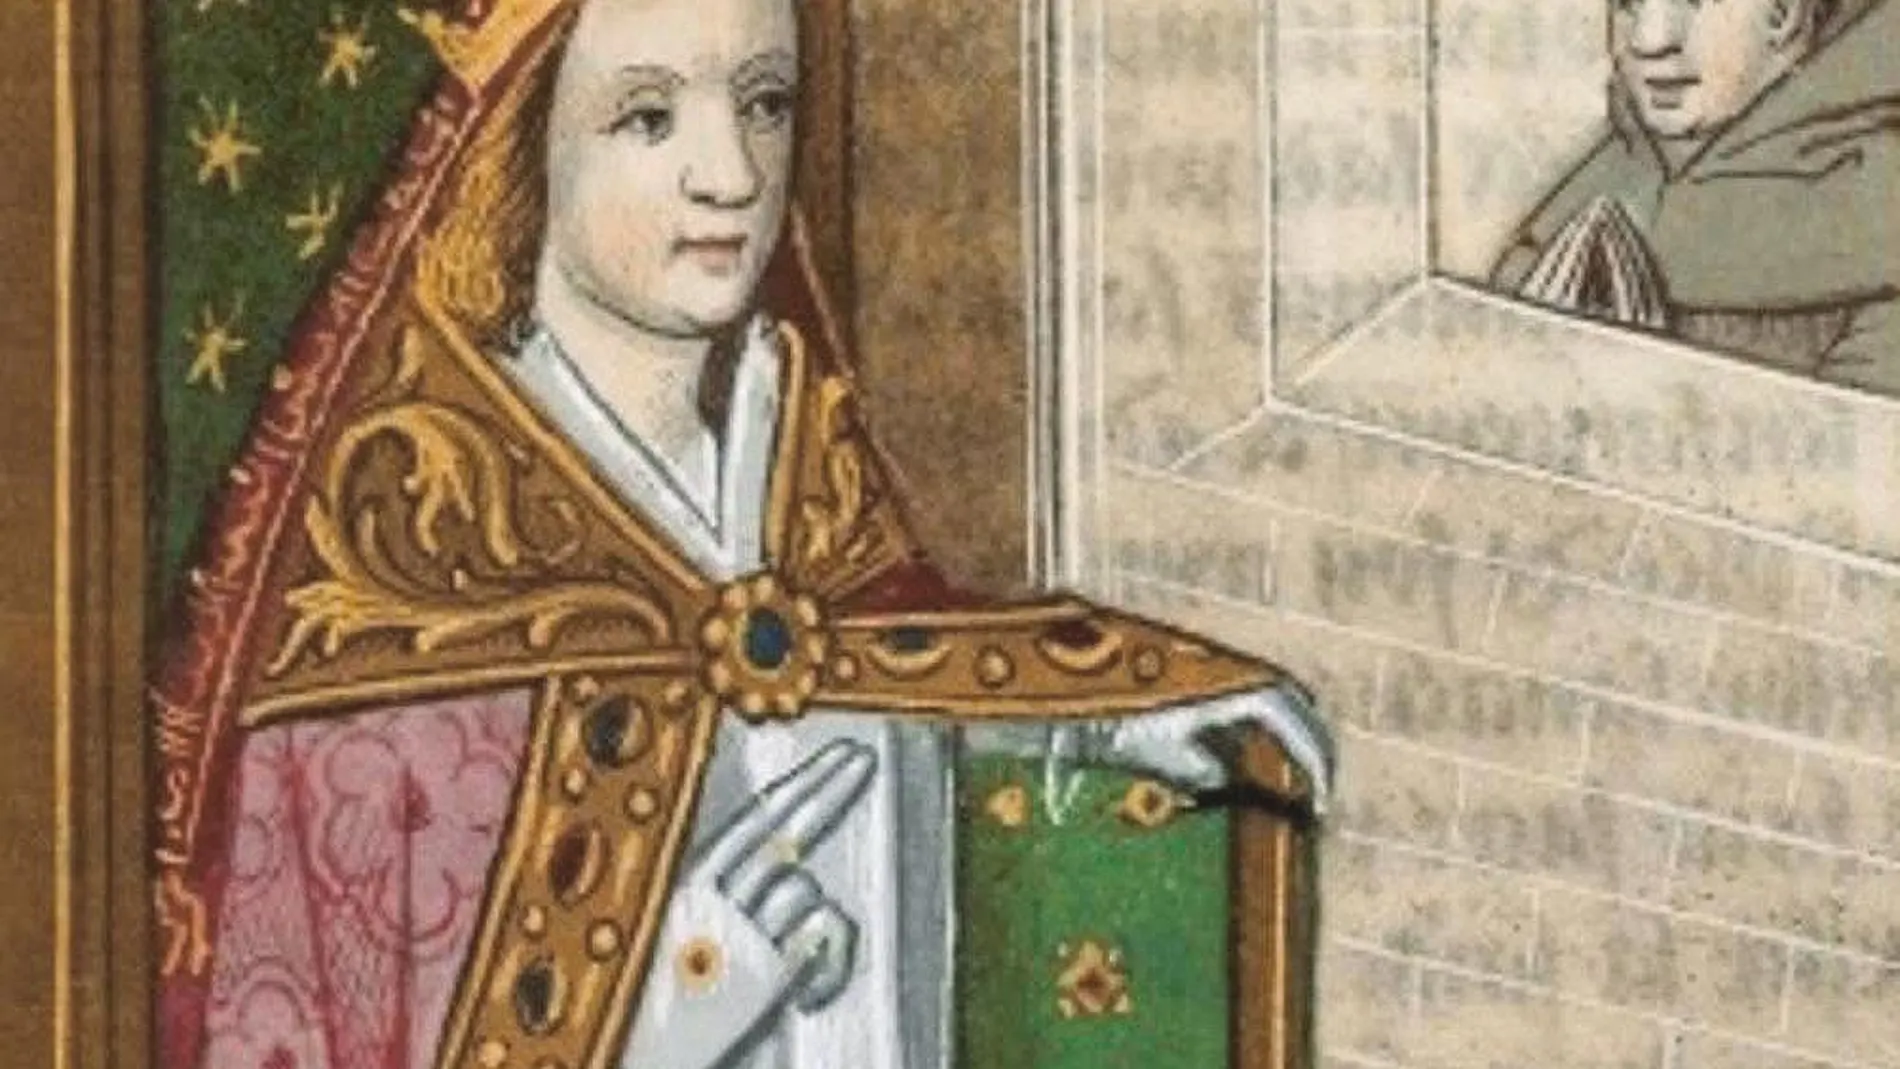 La «Papesse Jeanne» llegó a ser supuestamente pontífice en la Alta Edad Media